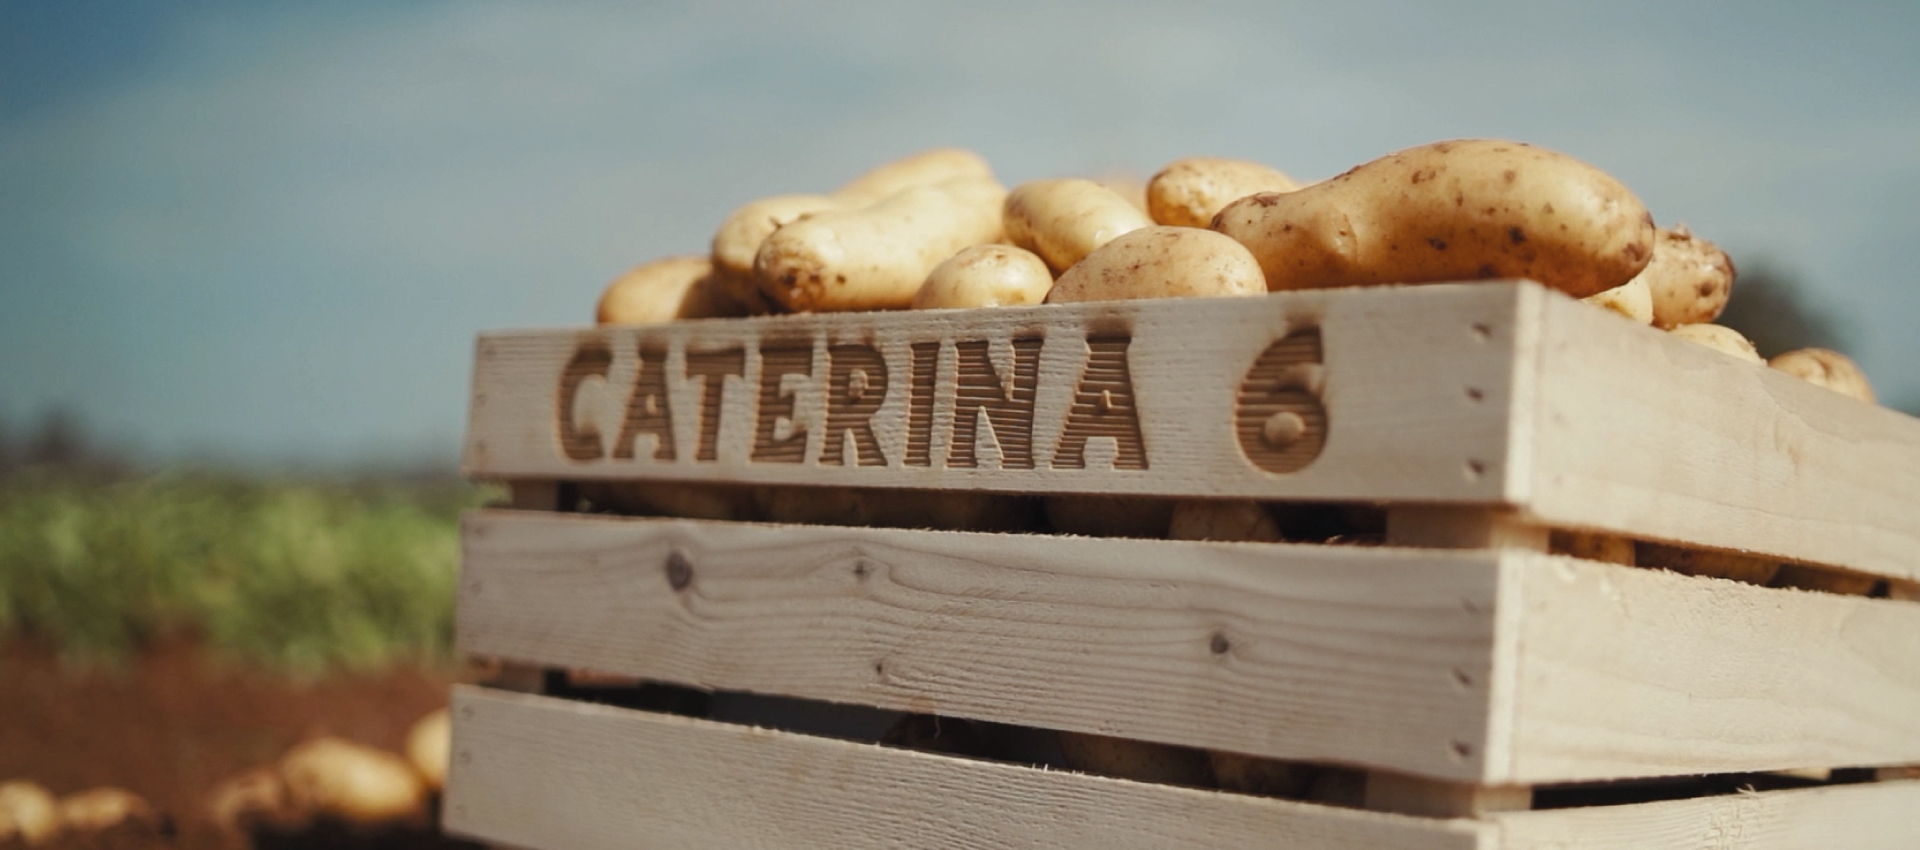 patate caterina6 in cassetta di legno